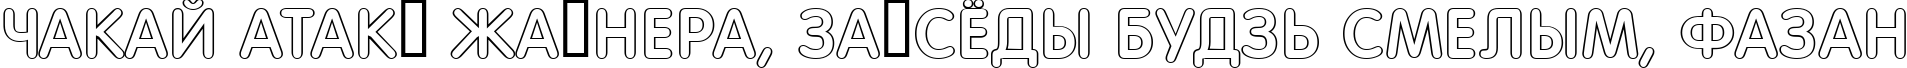 Пример написания шрифтом a_FuturaRoundTitulOtl текста на белорусском